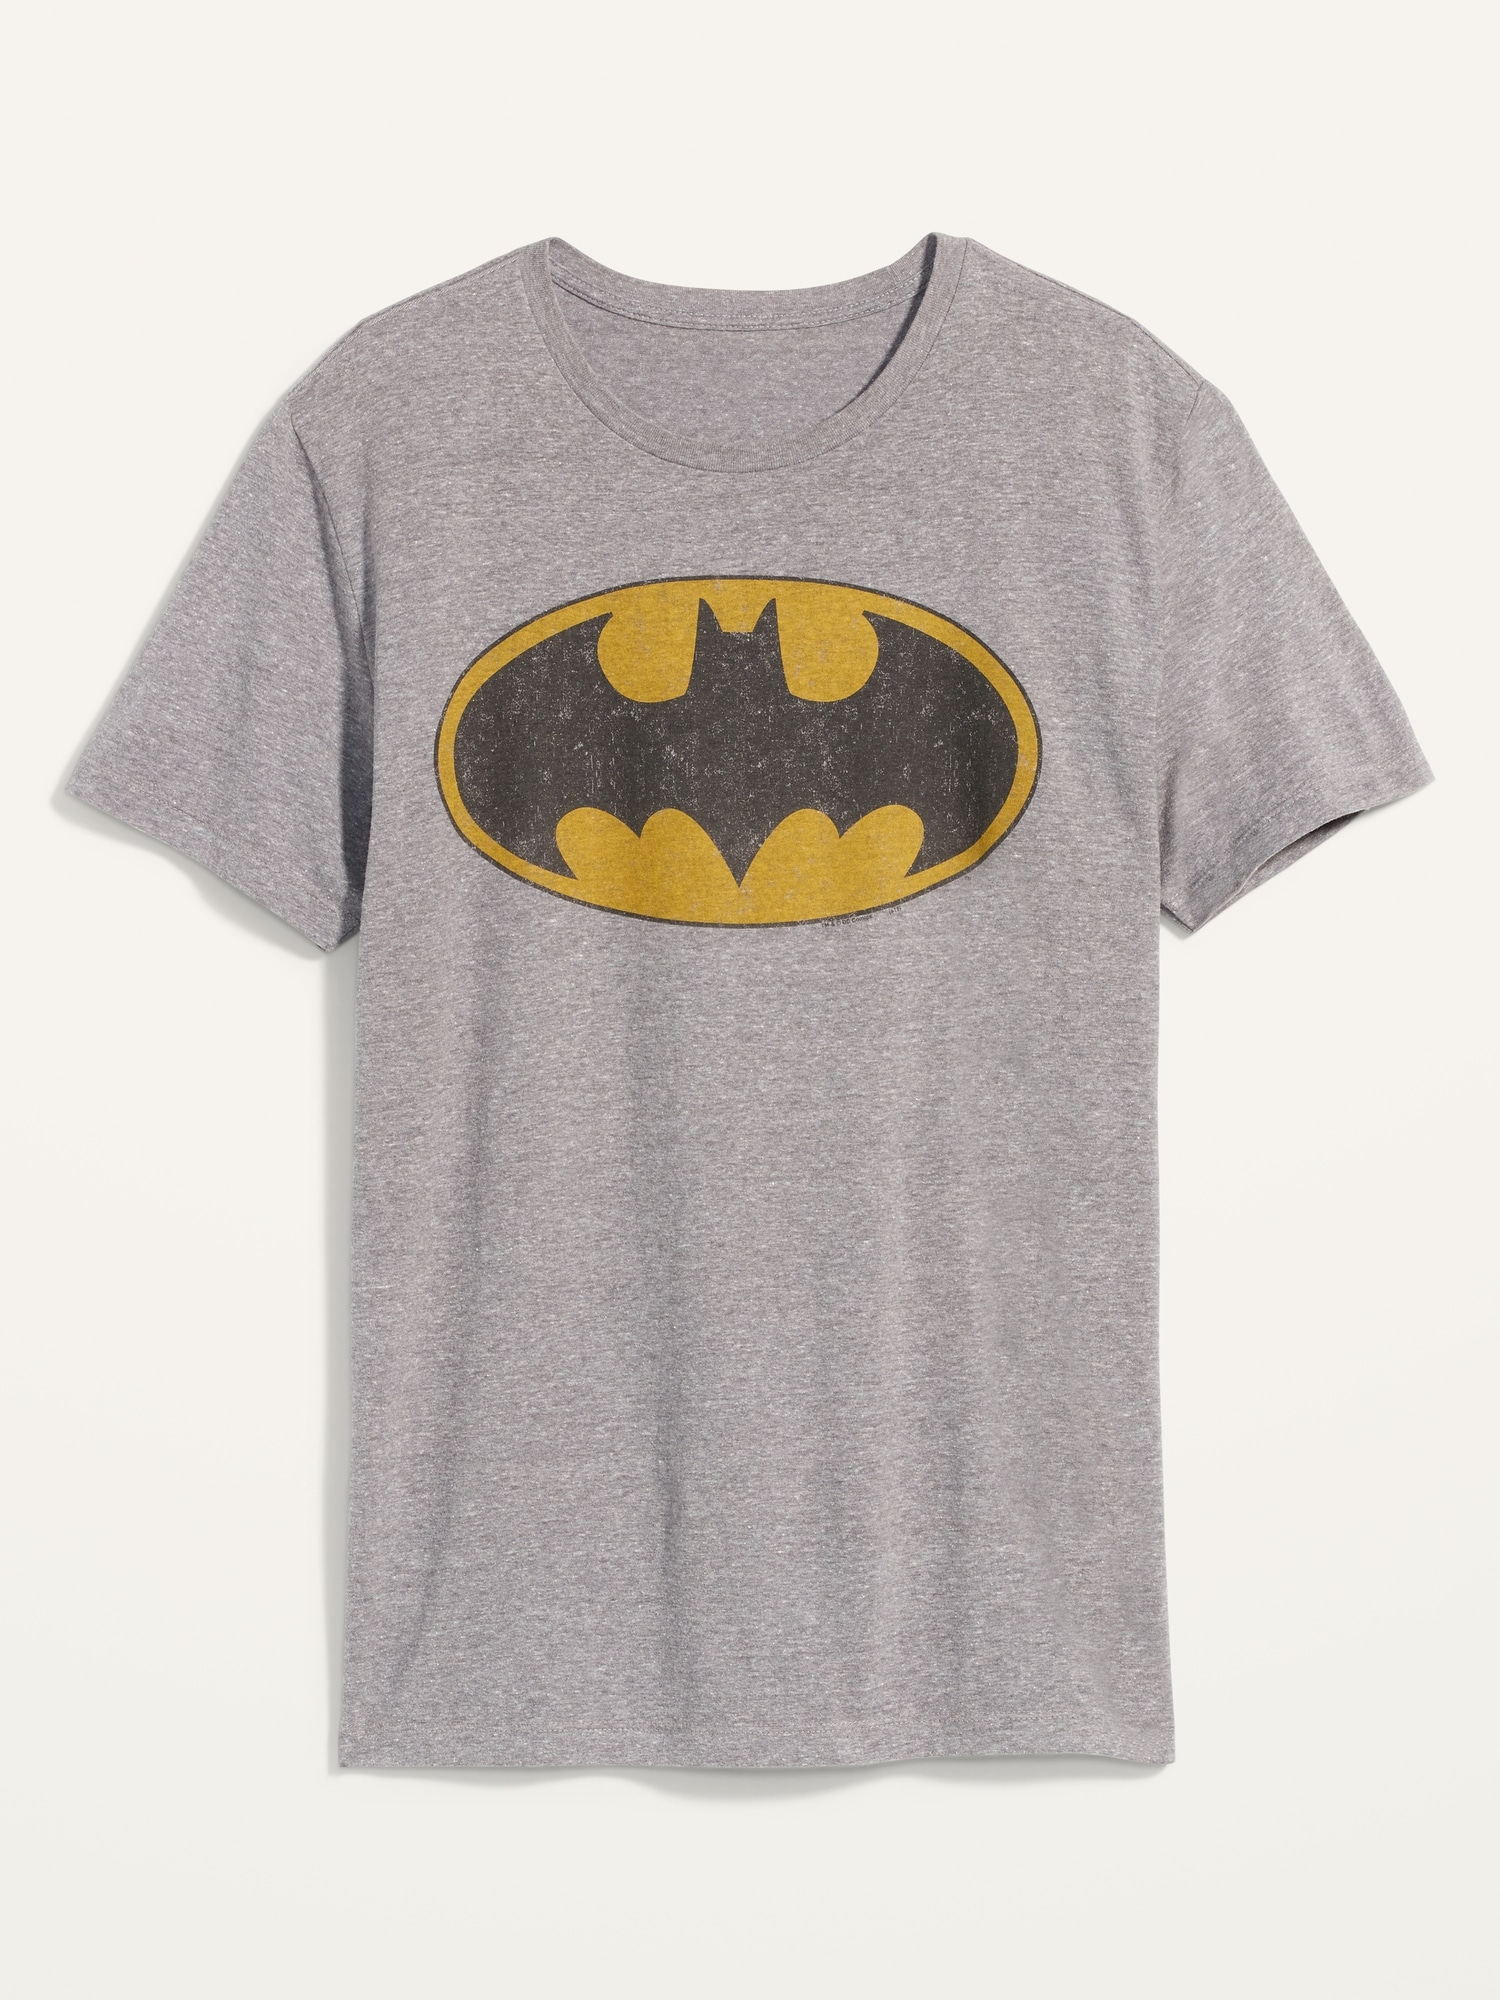 Kan weerstaan scherp kalmeren DC Comics™ Batman Gender-Neutral T-Shirt for Adults | Old Navy